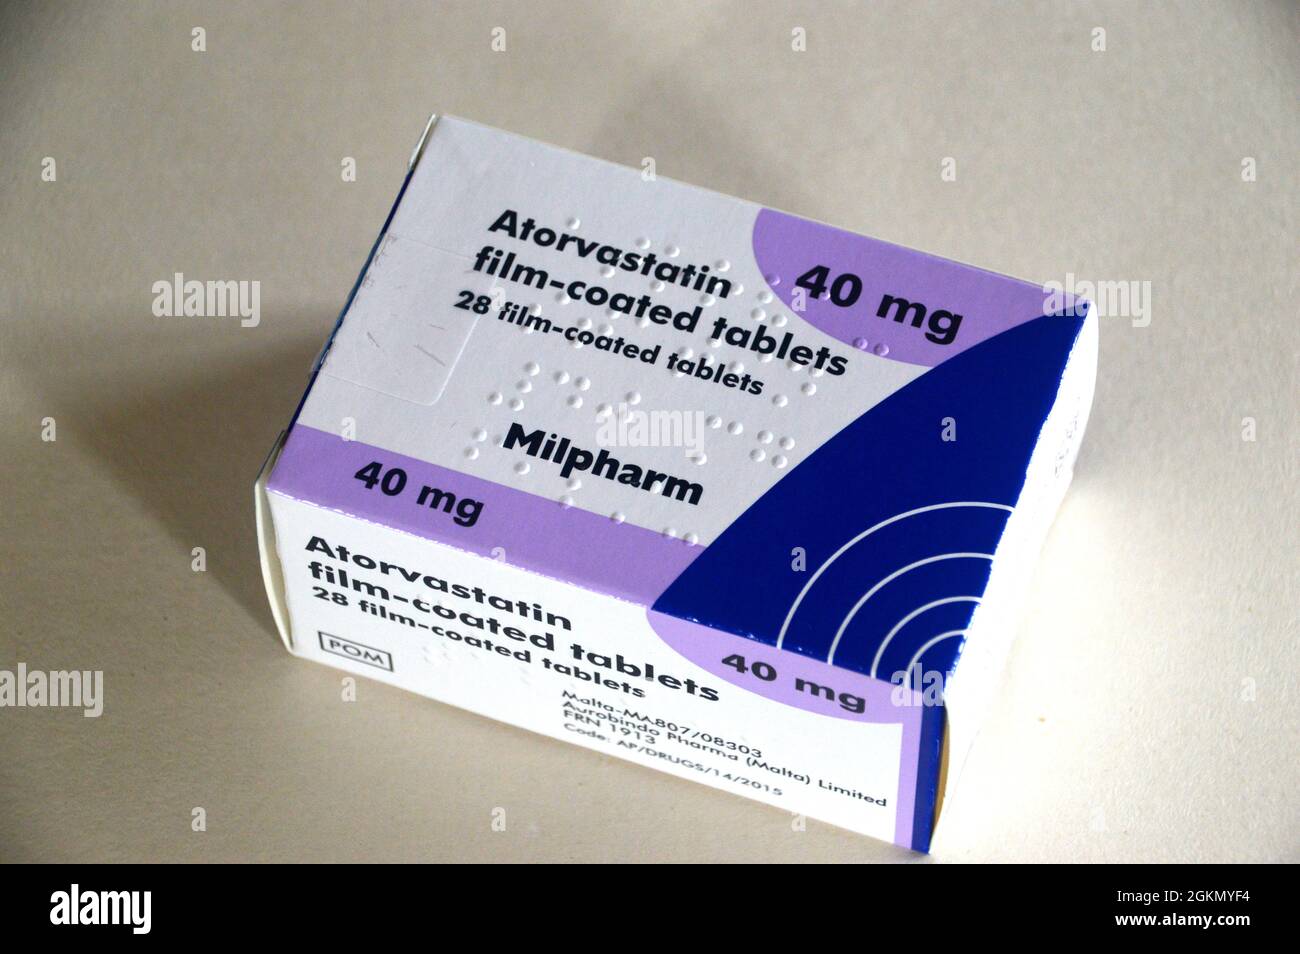 Una scatola di 28, 40mg compresse rivestite con film di Atorvastatin (Lipitor) 'Statin' fatte da Milpharm prescritto per la riduzione del colesterolo, Inghilterra, Regno Unito. Foto Stock